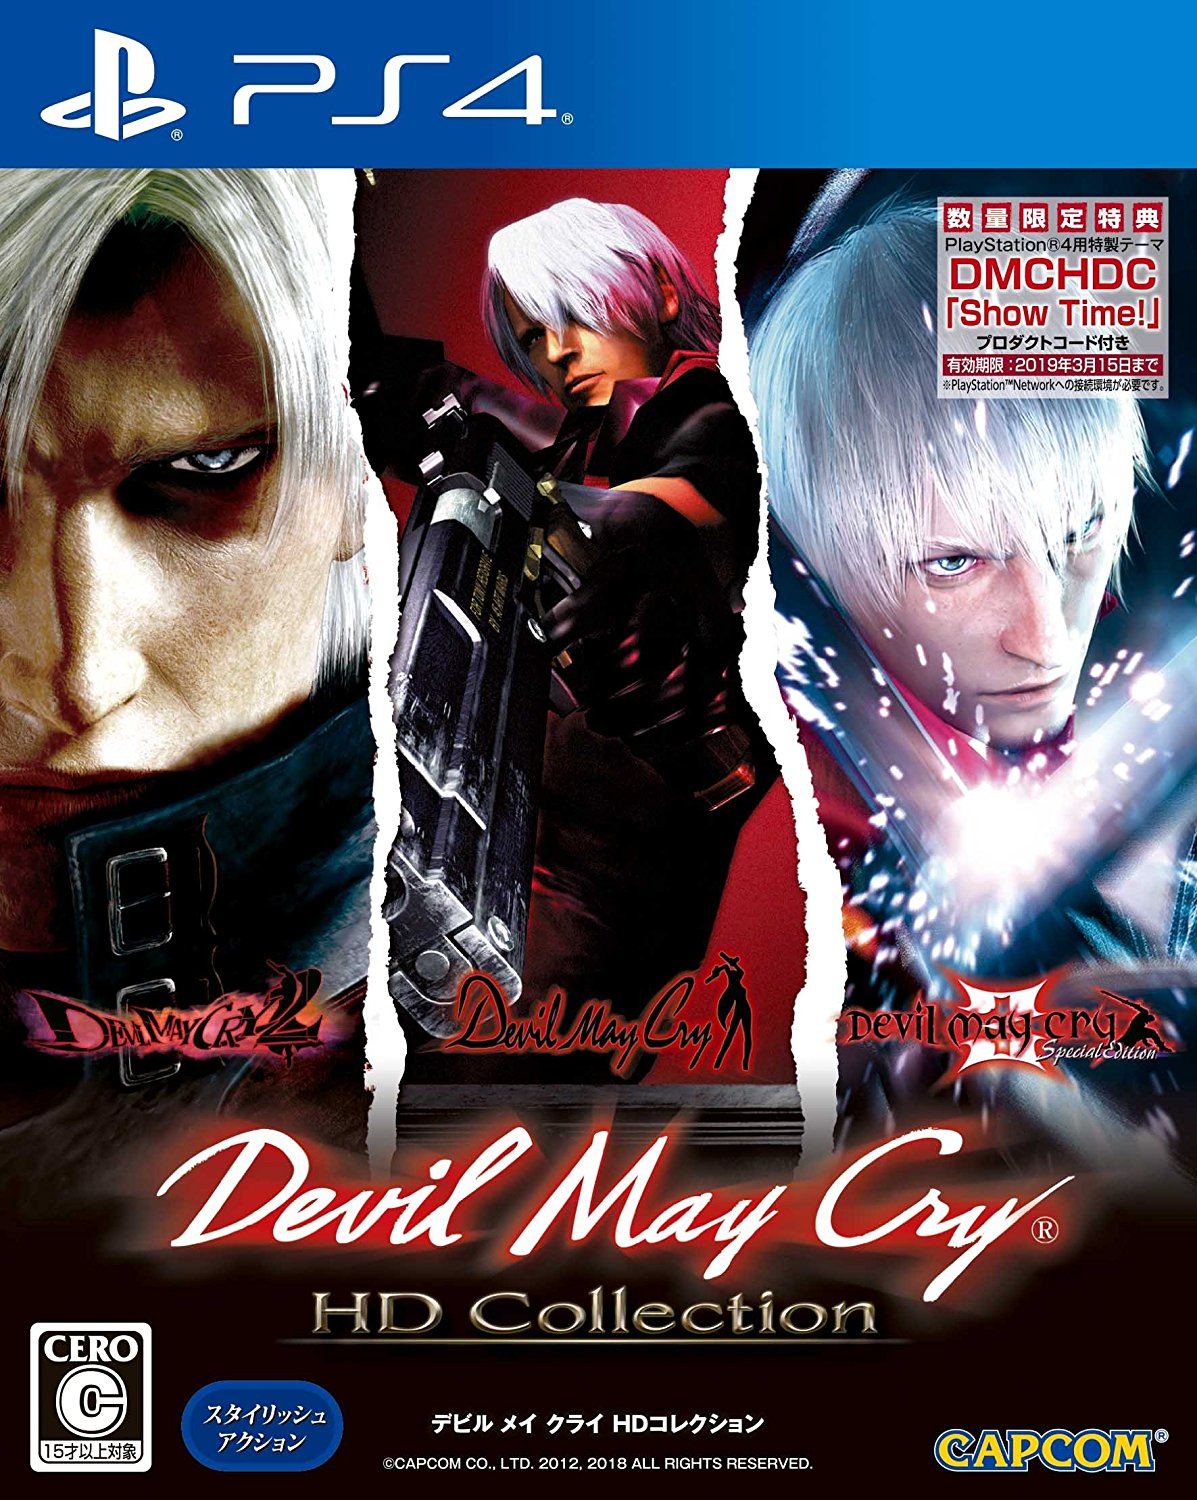  Devil May Cry 5 - PlayStation 4 : Capcom U S A Inc